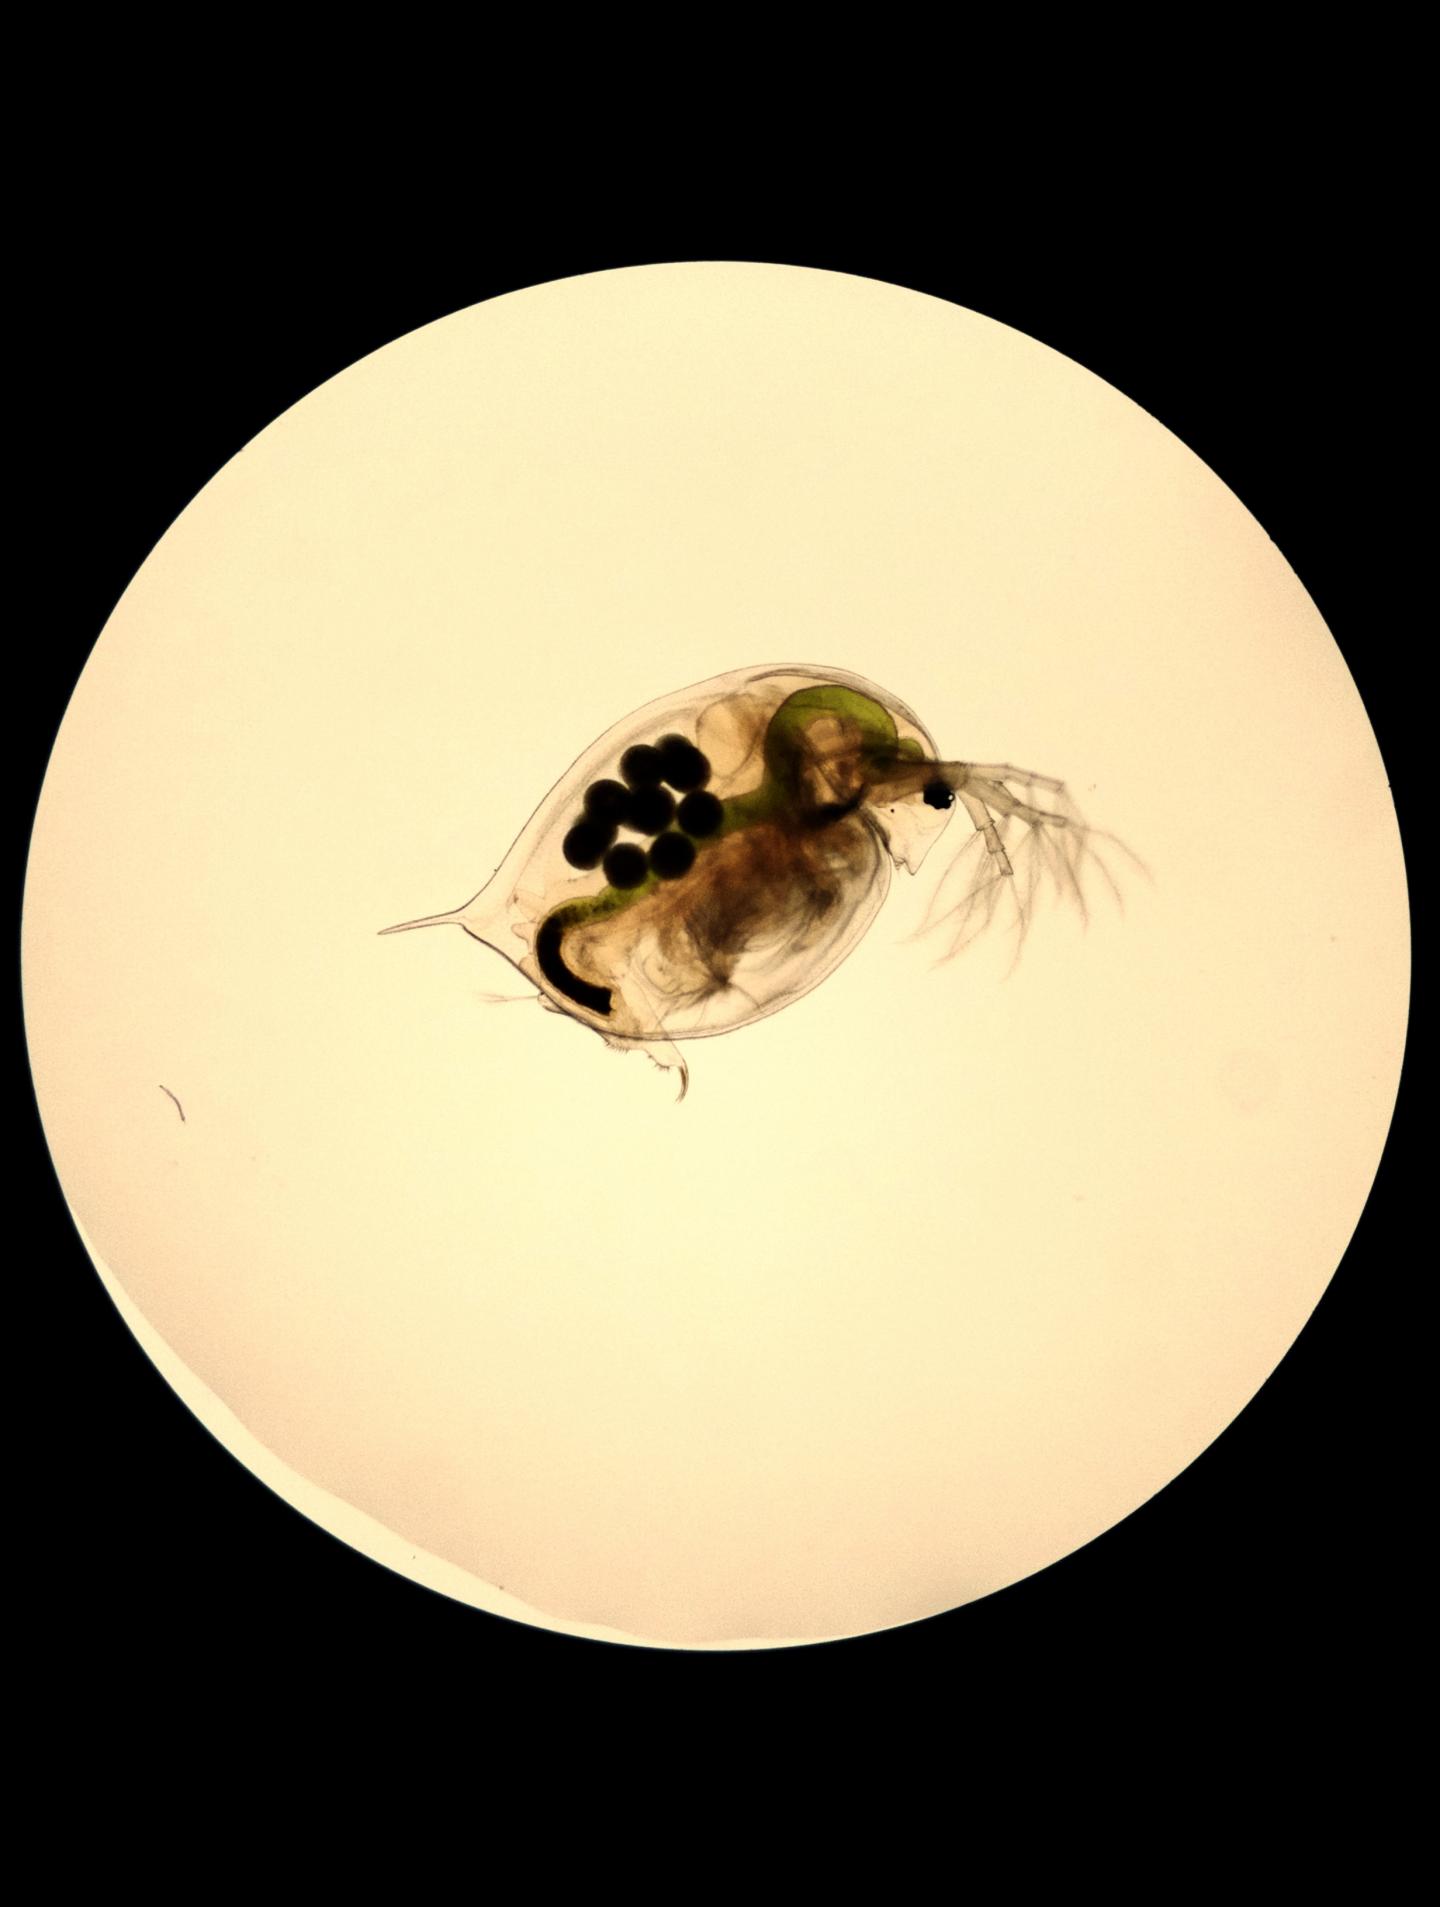 Water flea, Daphnia magna